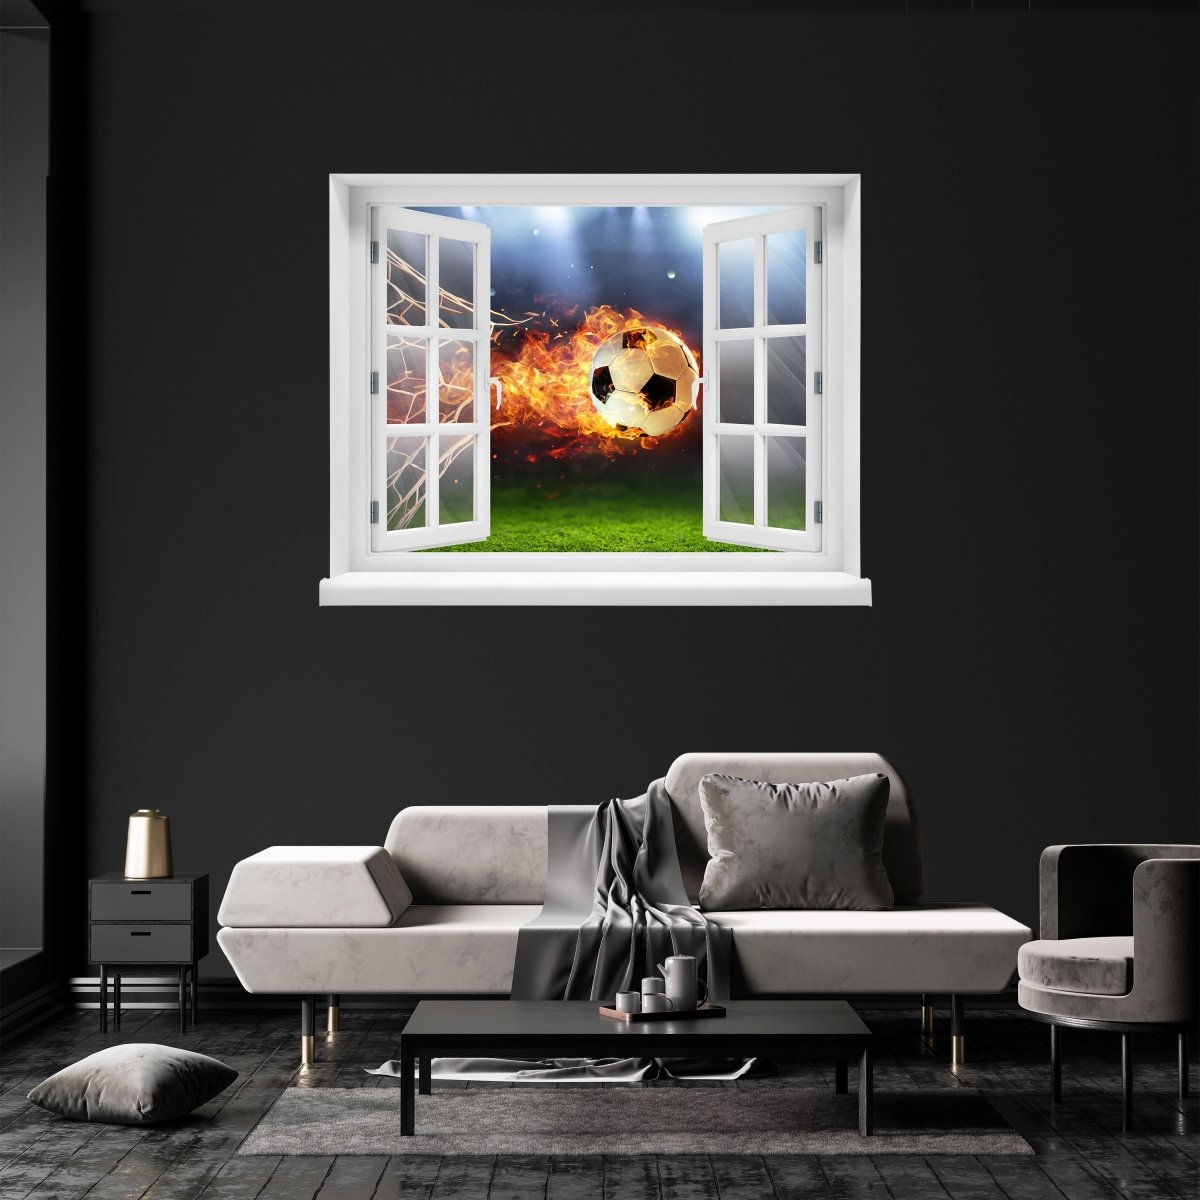 3D wall sticker football through net, fire, flames, goal - wall decal M1134